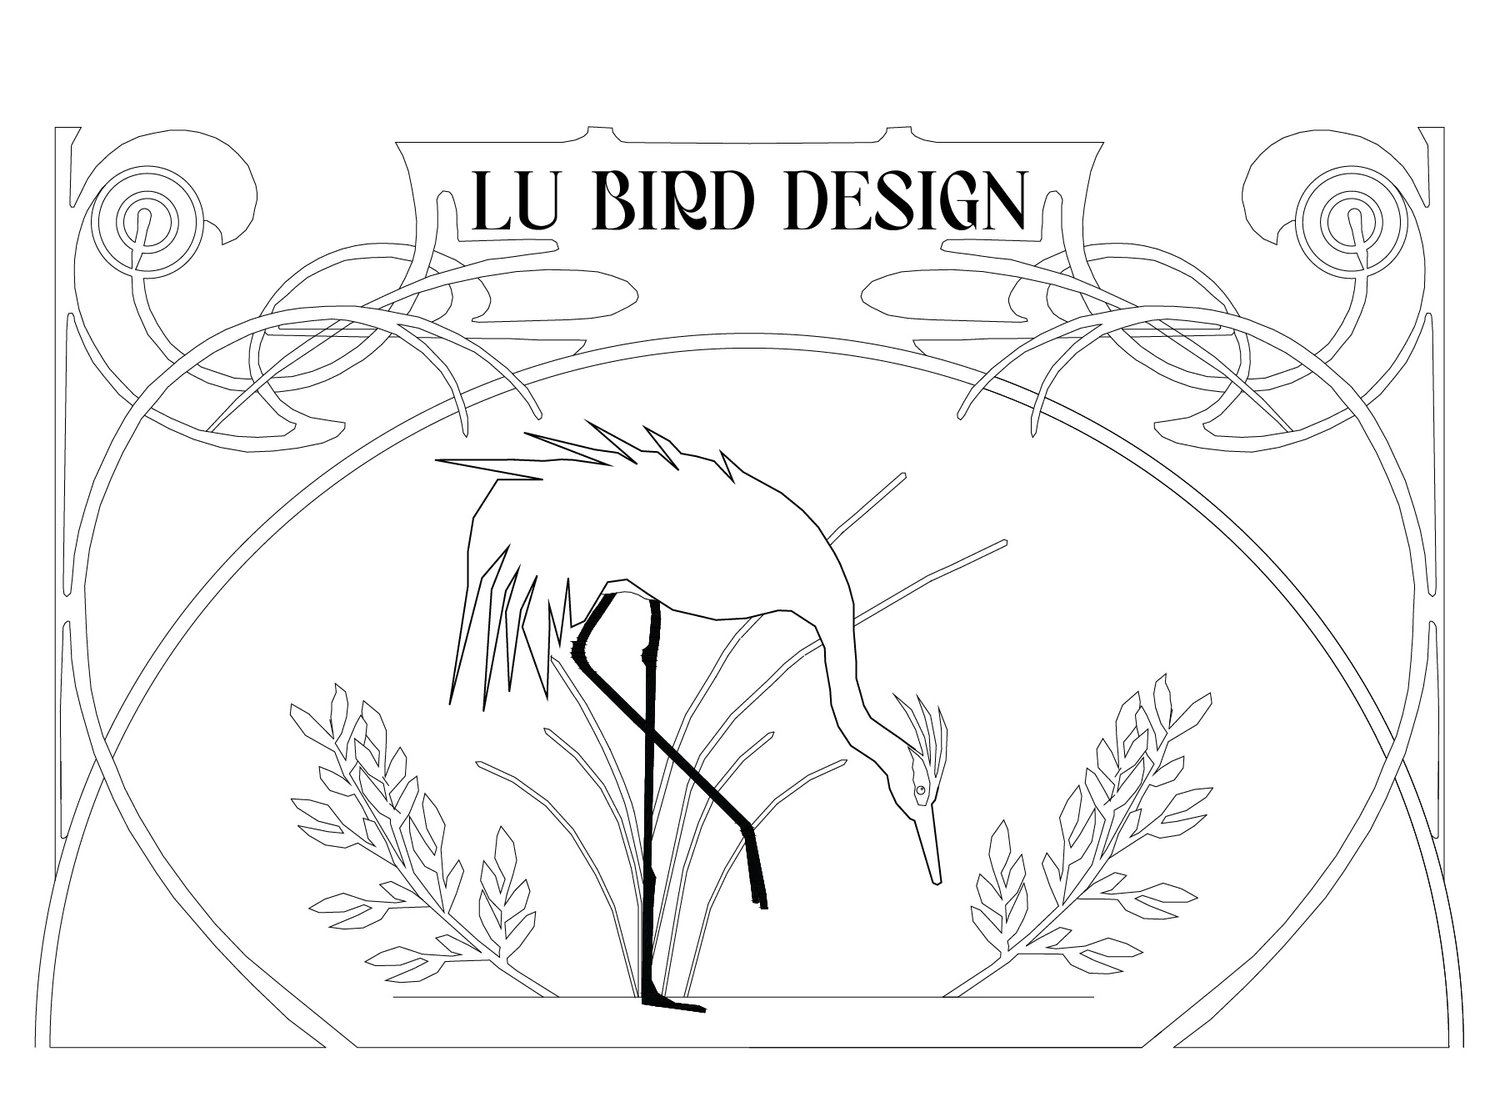 Lu Bird Design